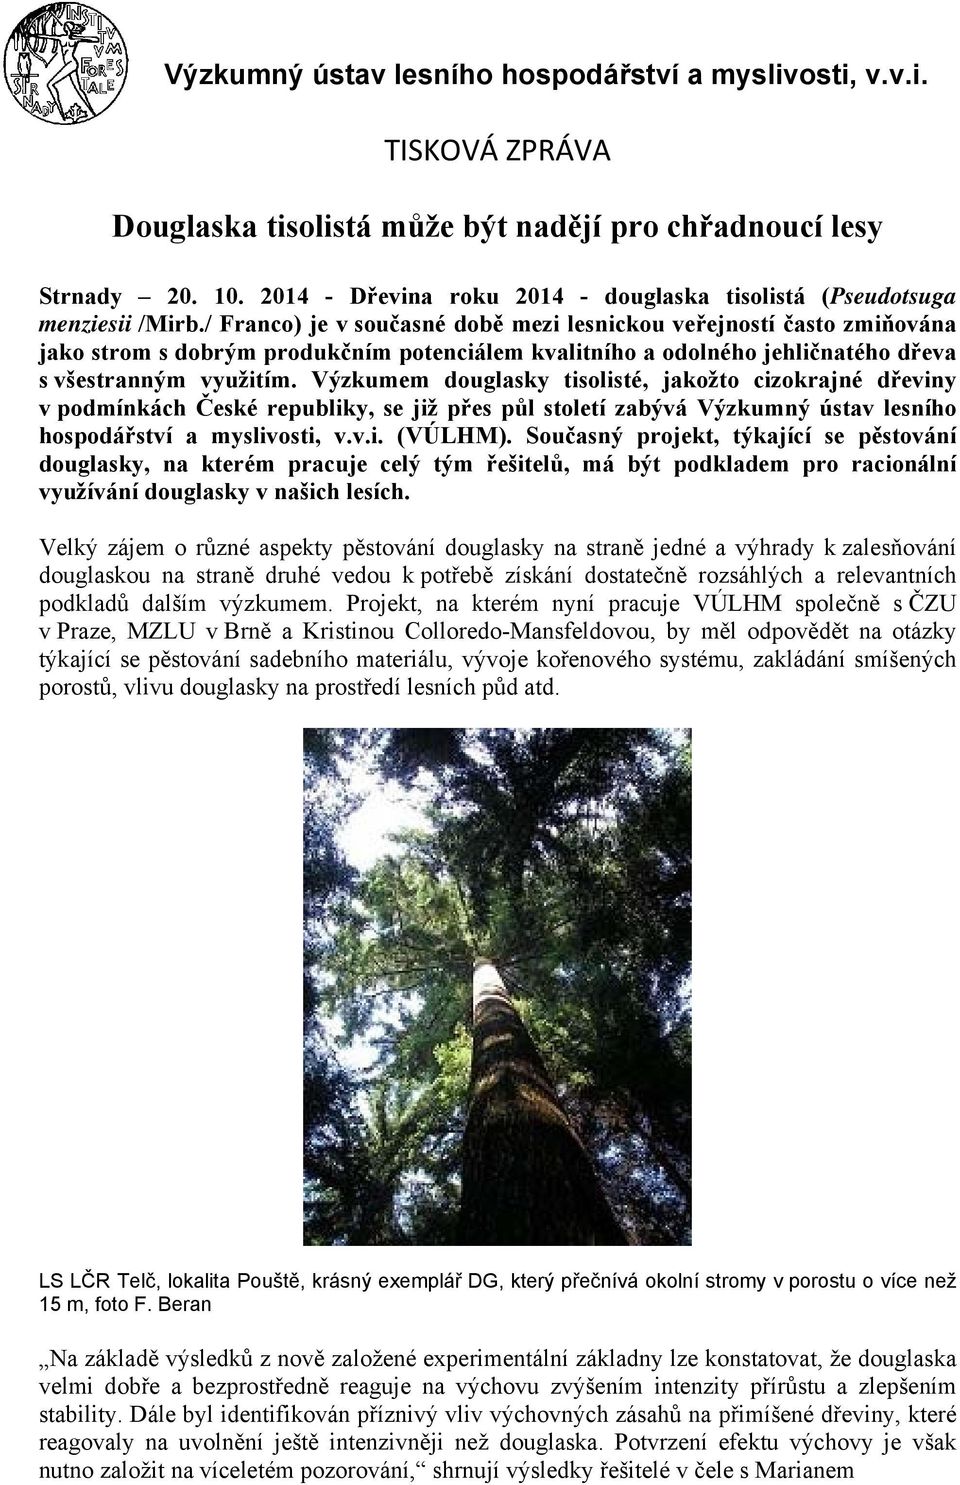 Výzkumem douglasky tisolisté, jakožto cizokrajné dřeviny v podmínkách České republiky, se již přes půl století zabývá Výzkumný ústav lesního hospodářství a myslivosti, v.v.i. (VÚLHM).